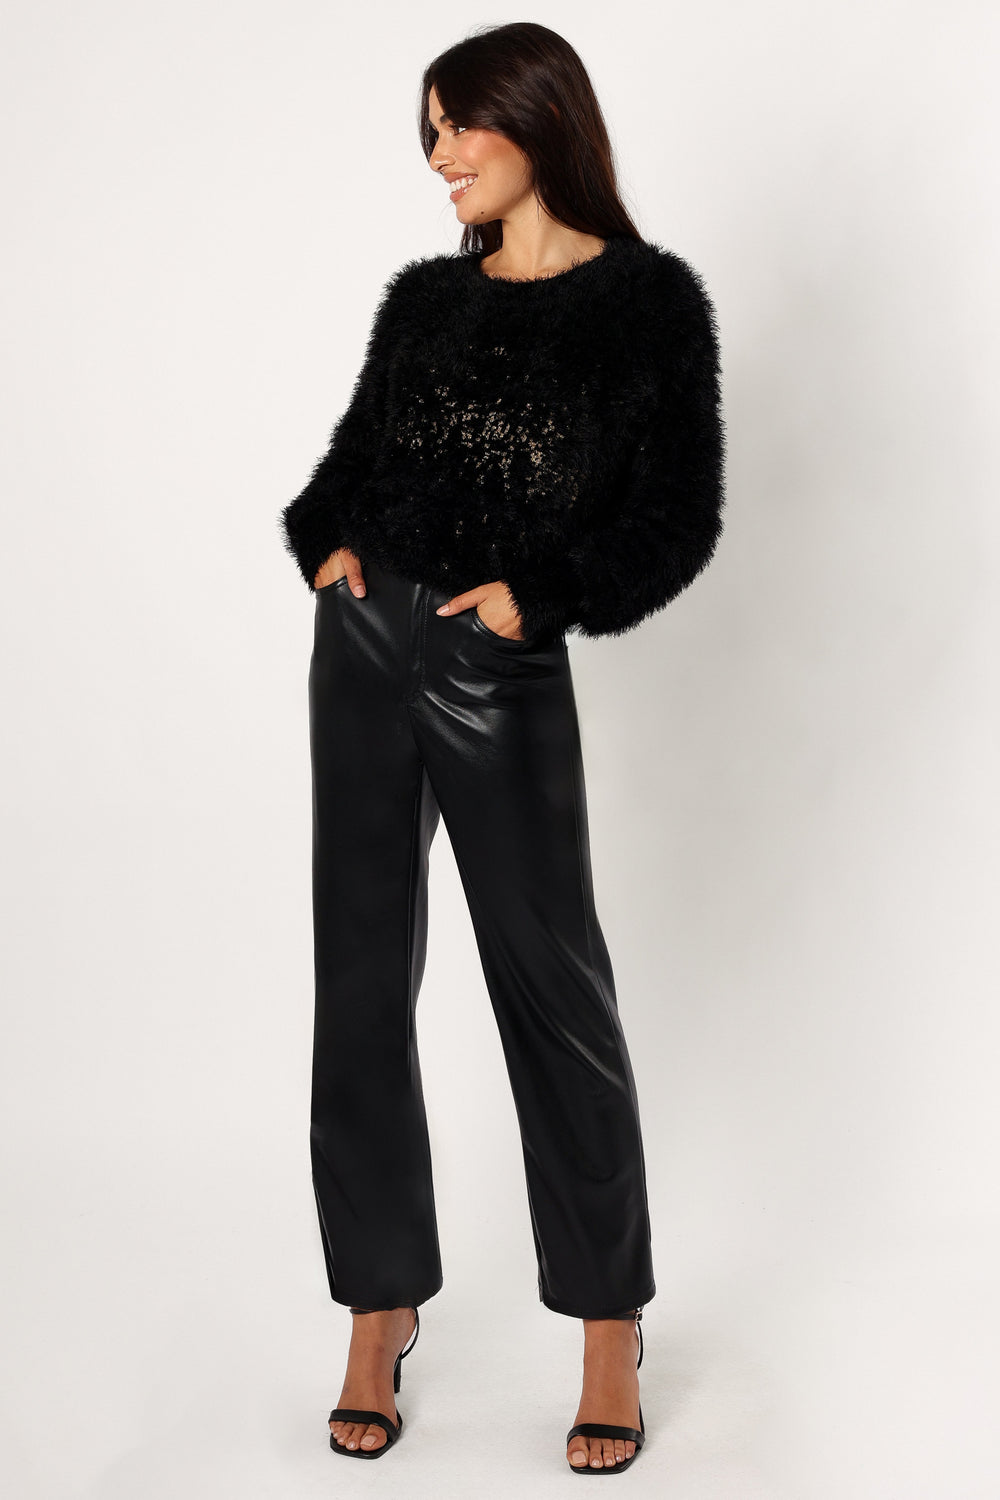 Sabrina Knit Sweater - Black - Petal & Pup USA